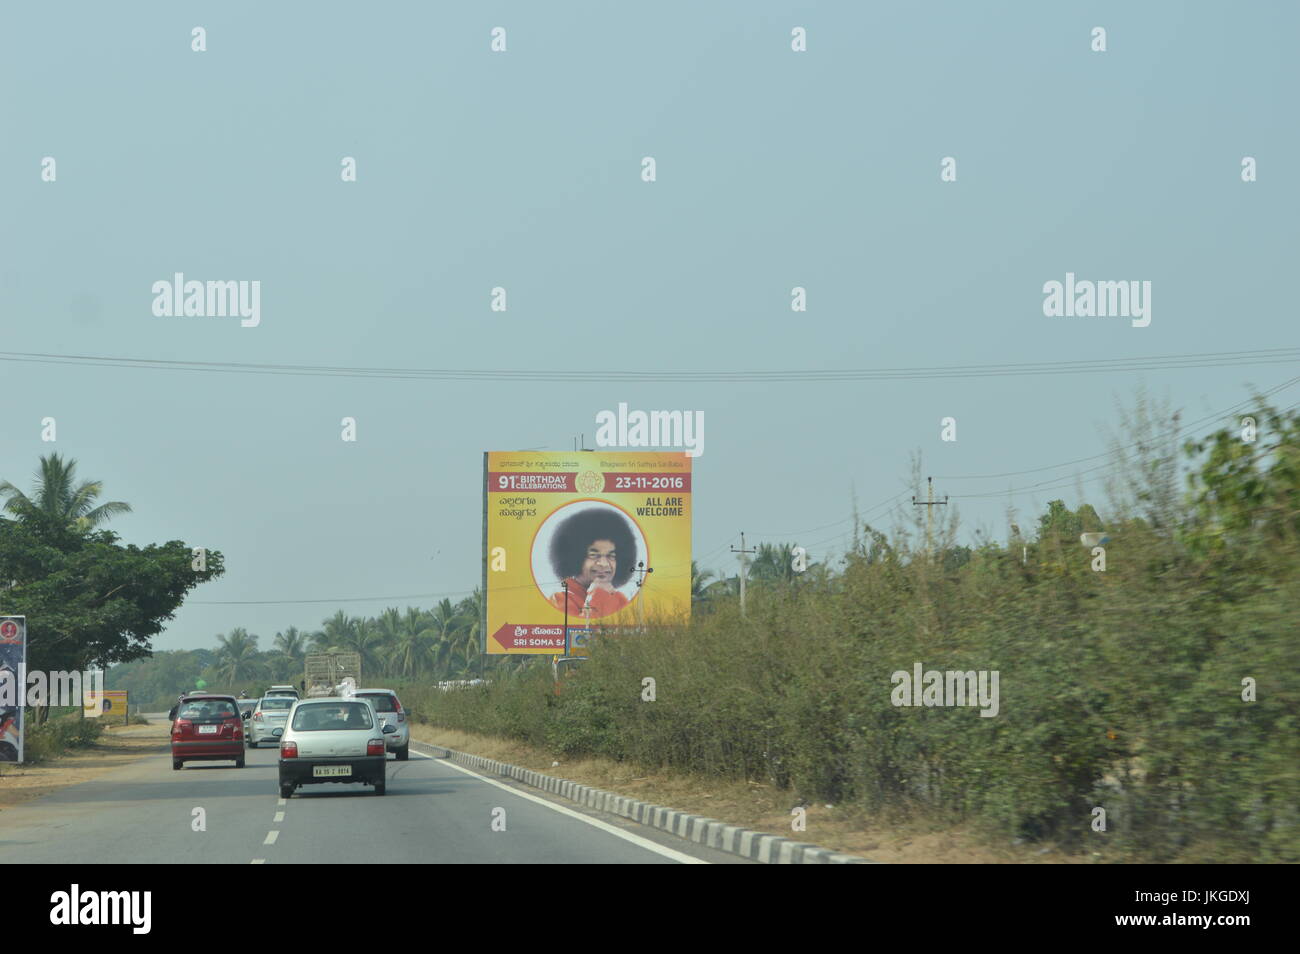 Sai Baba Plakatwerbung ein nigungs-Fpr was im 91. Geburtstag gewesen wäre. Dies war auf dem Weg nach Mysore gesehen. Stockfoto